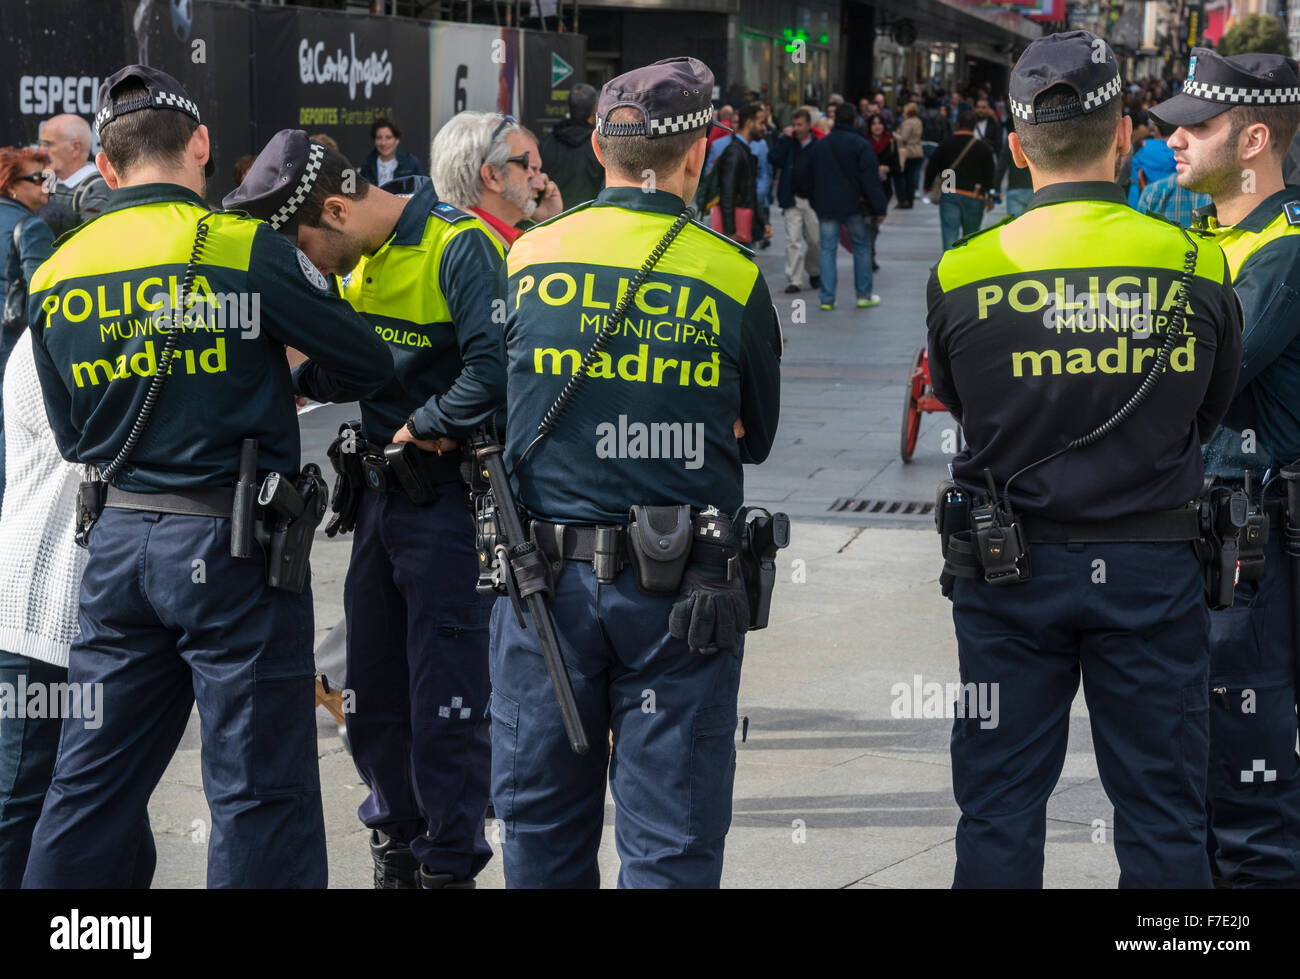 La police municipale en service dans la Puerta del Sol, Madrid, Espagne Banque D'Images